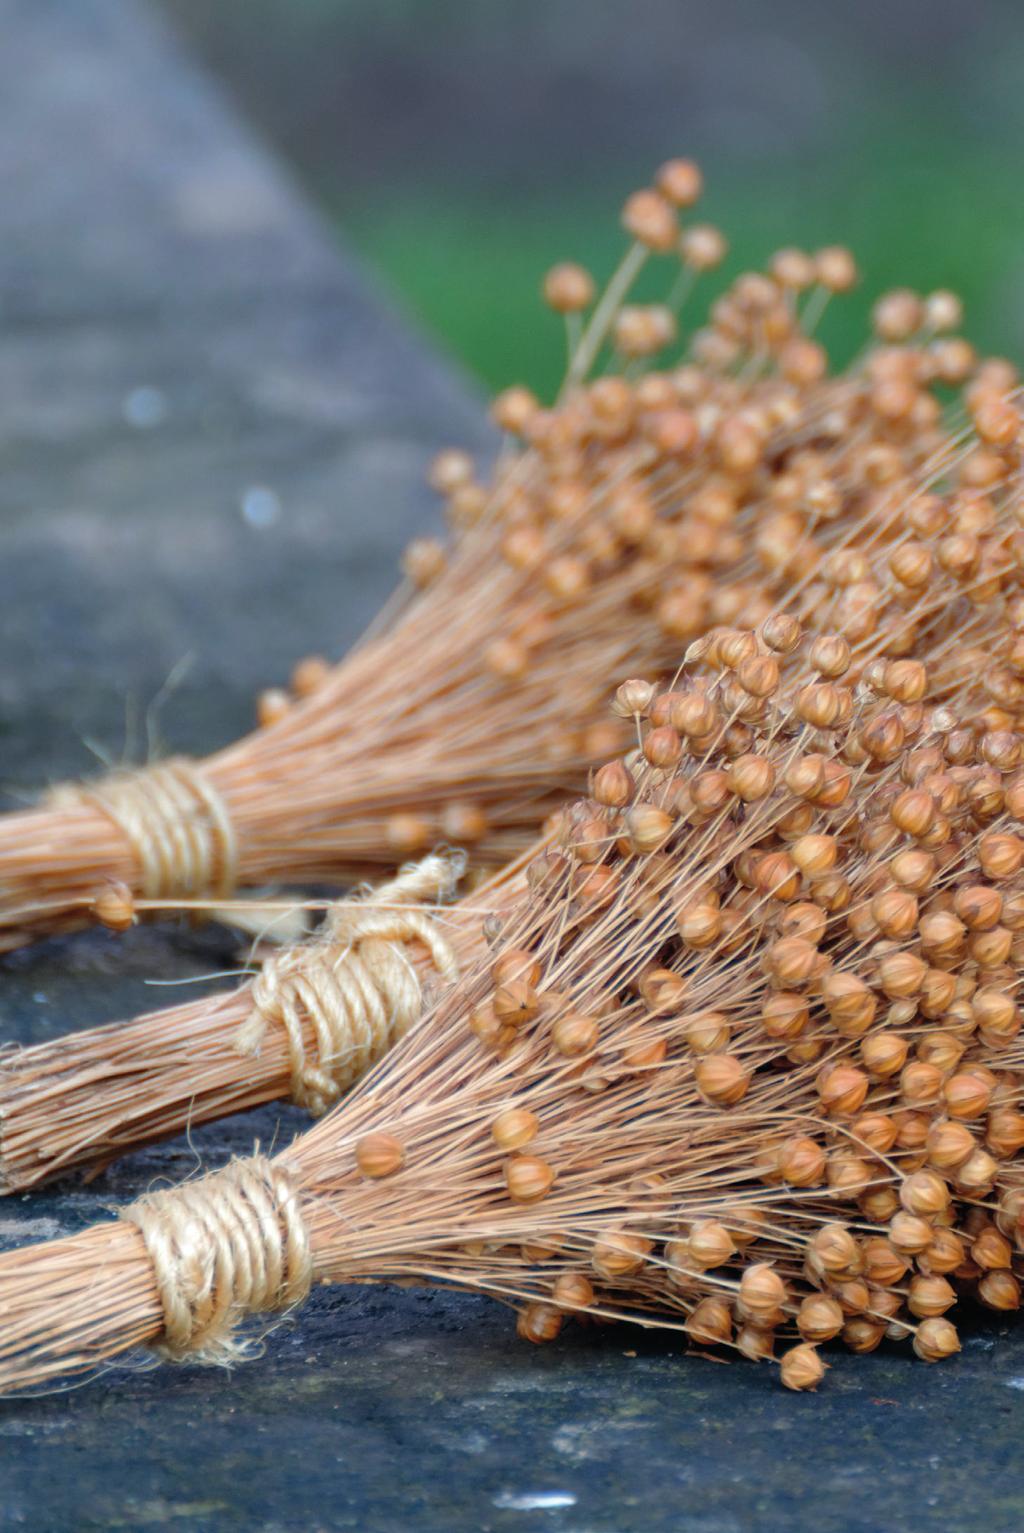 Pellavansiemenet Öljypellavaa viljellään pääasiassa pellavansiemenöljyn valmistukseen, mutta myös kokonaisia sekä rouhittuja siemeniä on markkinoilla.